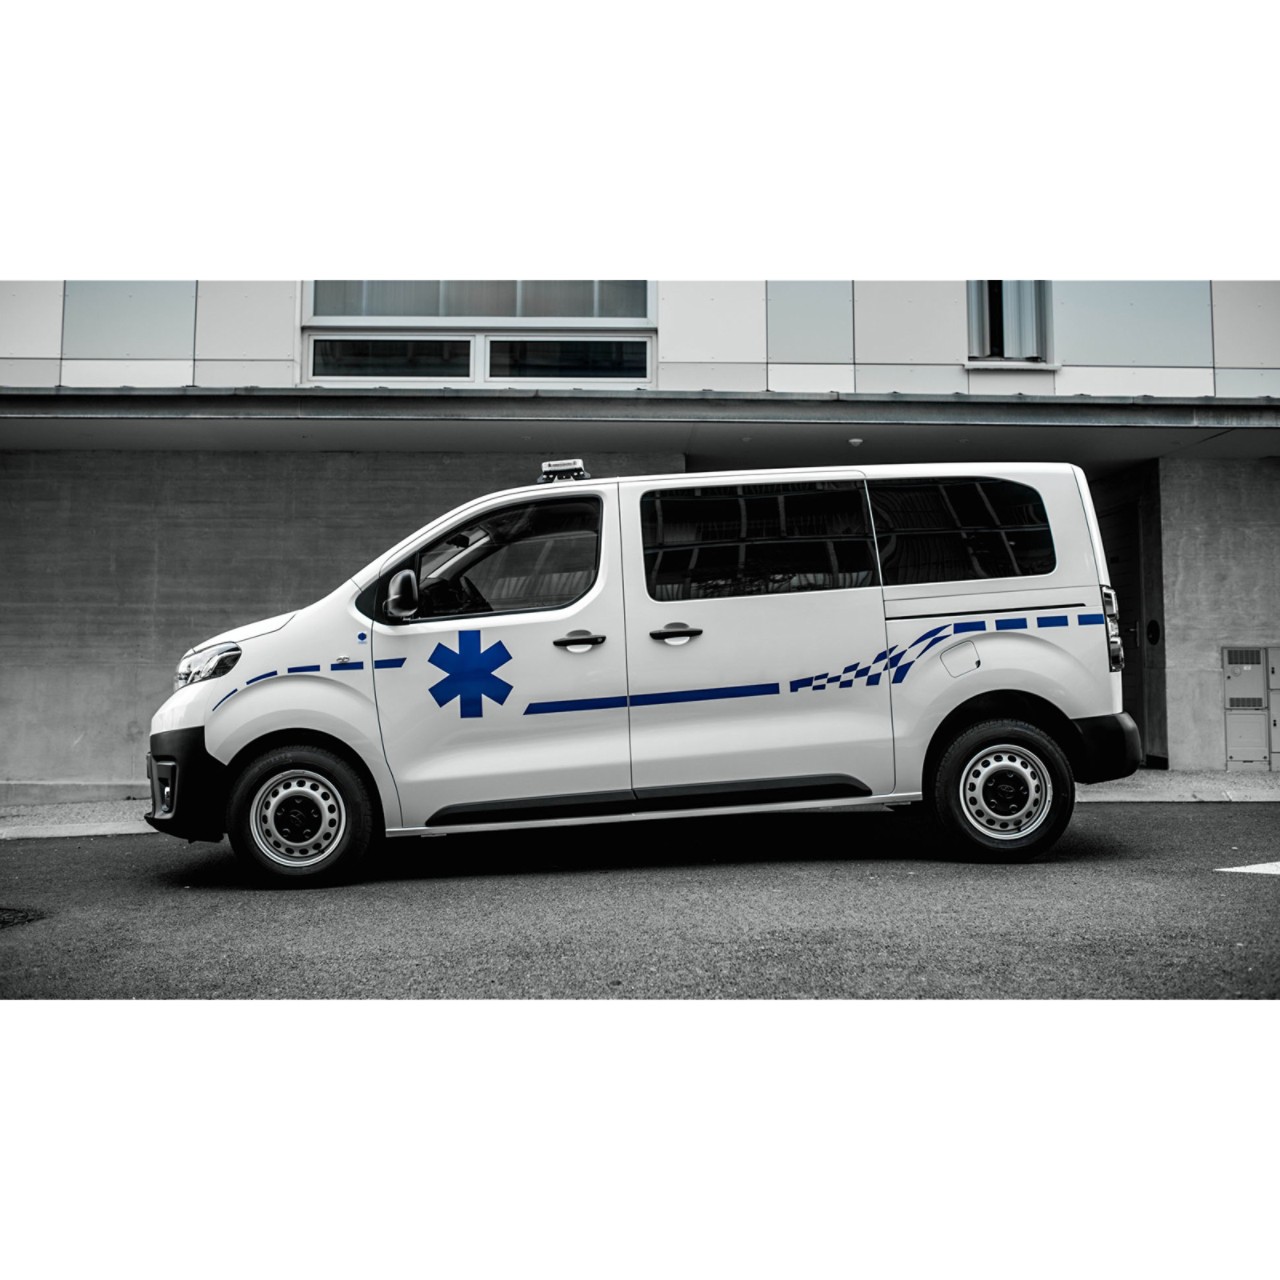 Transports médicaux et pompiers Toyota Professional